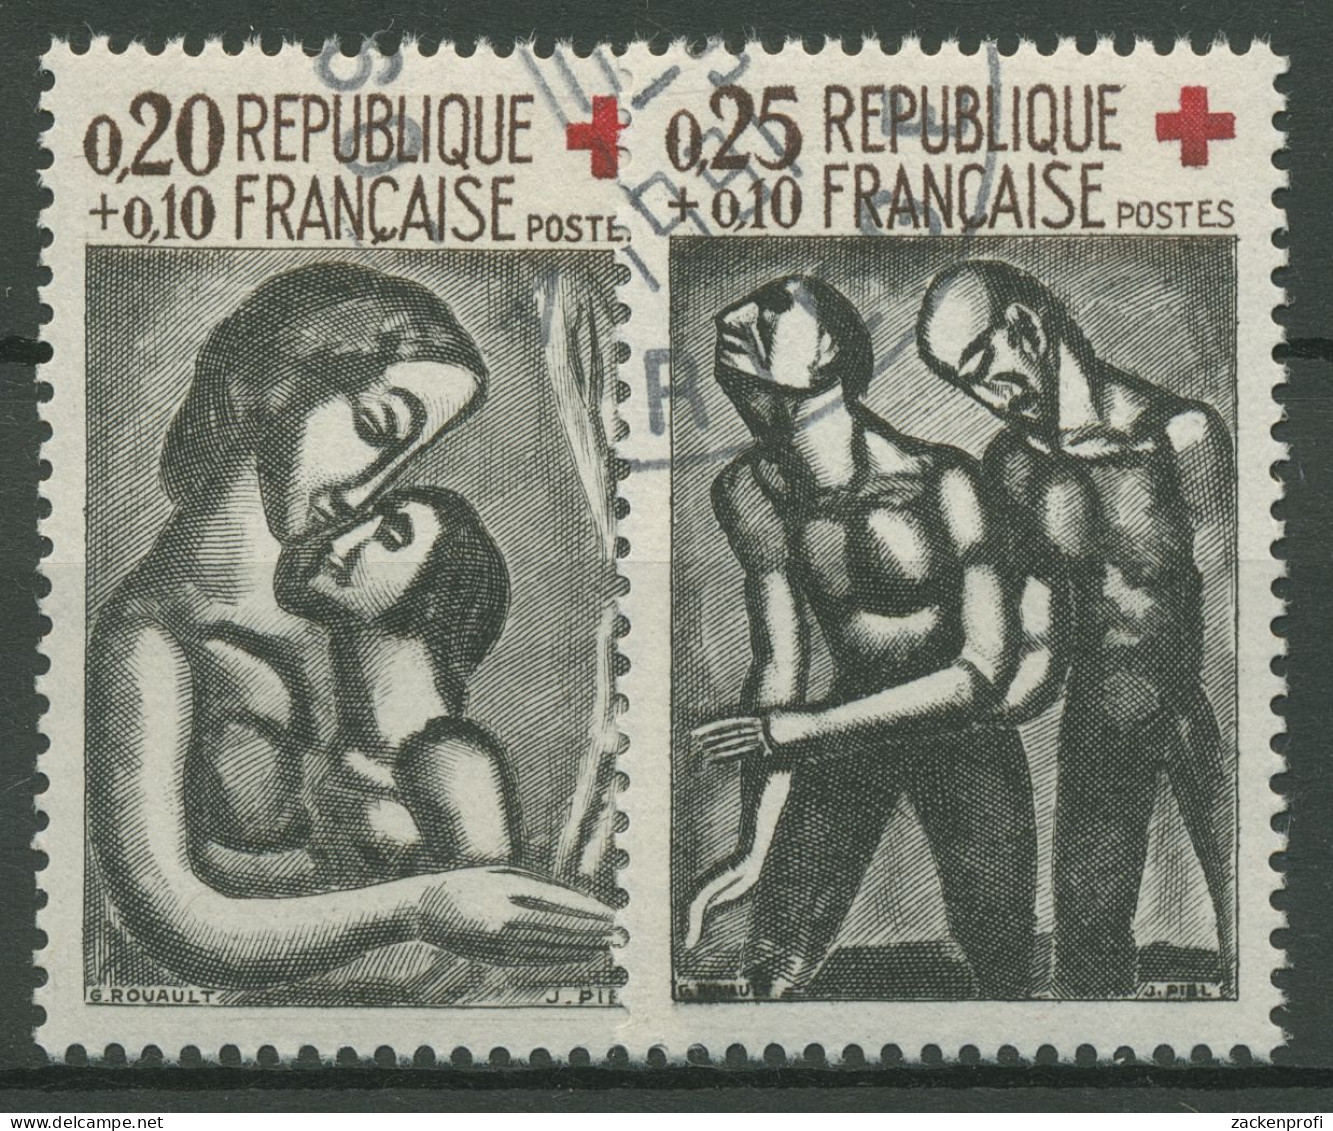 Frankreich 1961 Rotes Kreuz Gemälde 1376/77 Gestempelt - Oblitérés